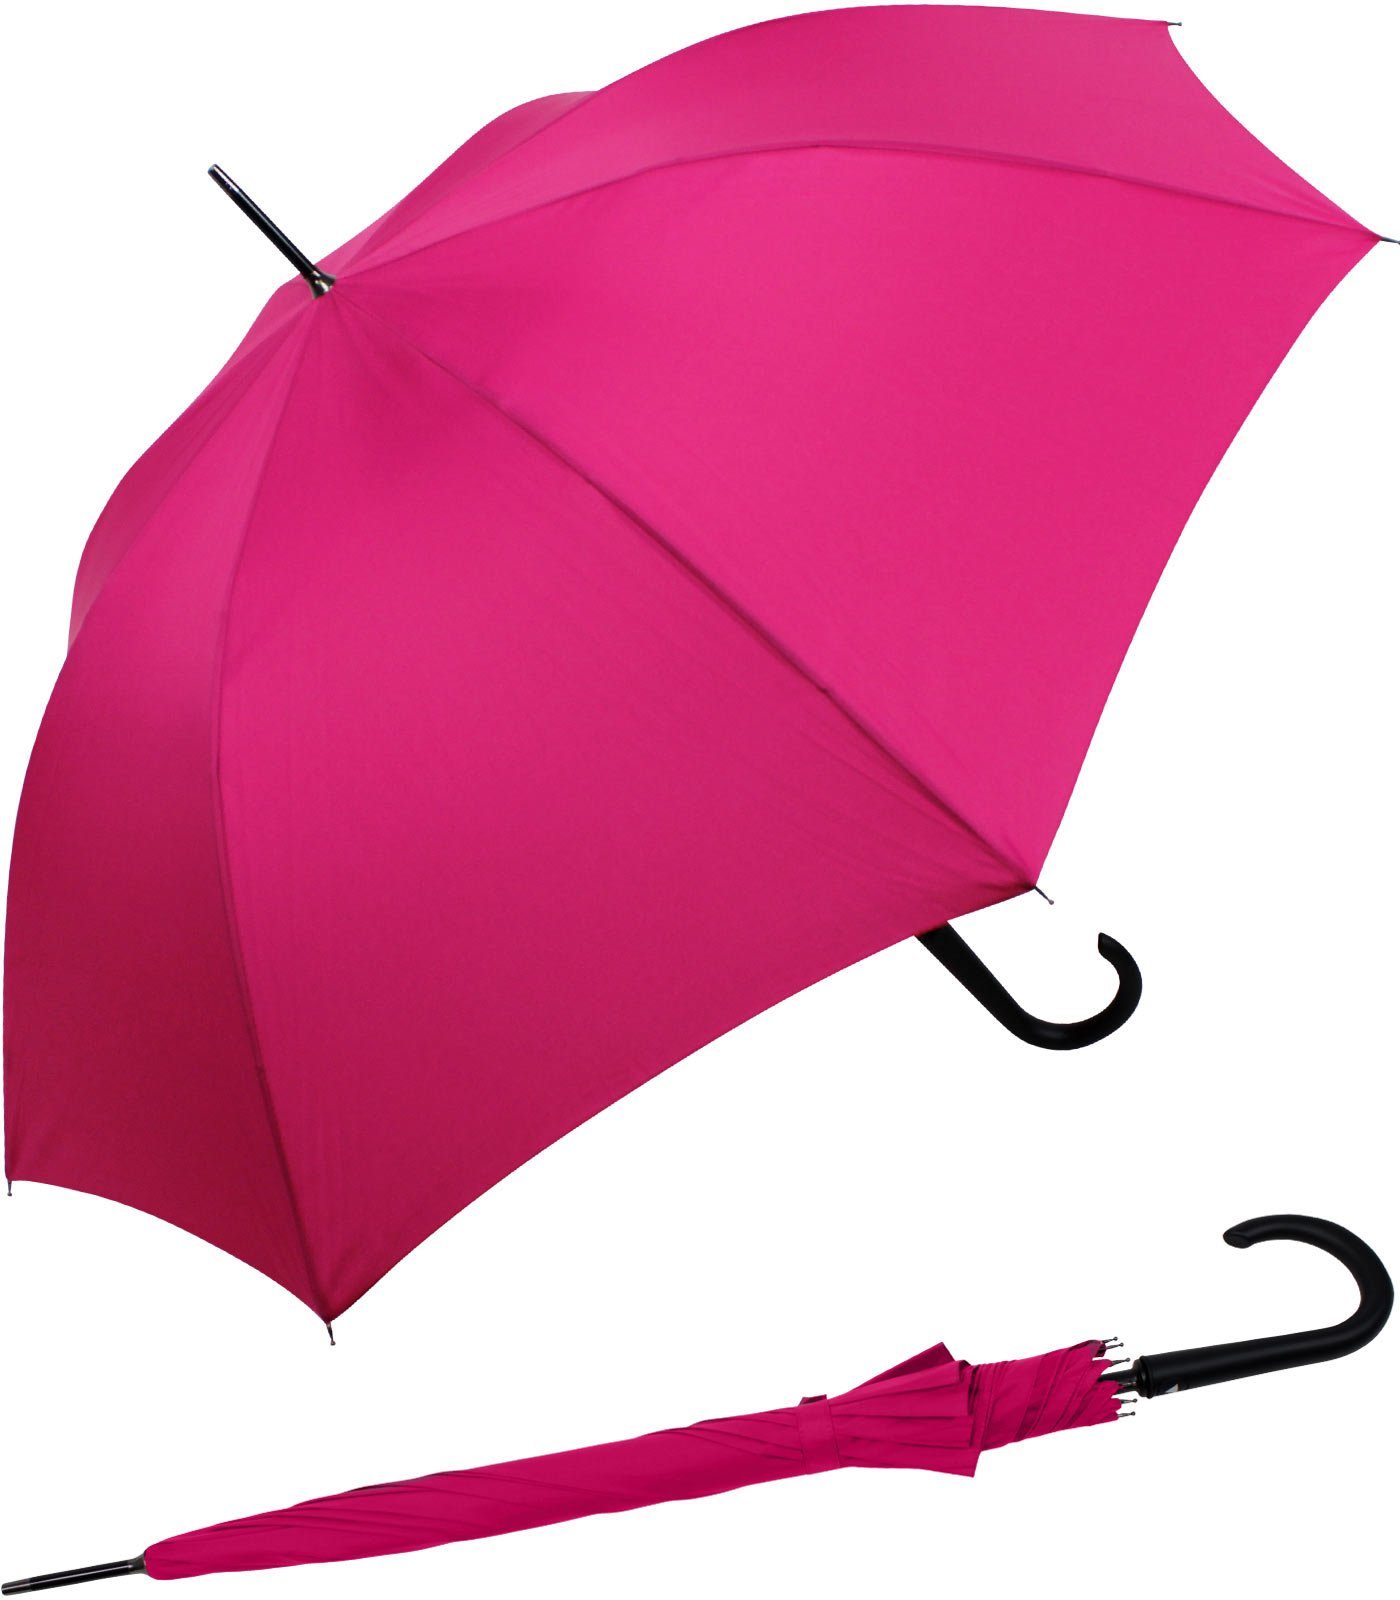 RS-Versand Langregenschirm großer stabiler Regenschirm mit Auf-Automatik,  Stahl-Fiberglas-Gestell, integrierter Auslöseknopf